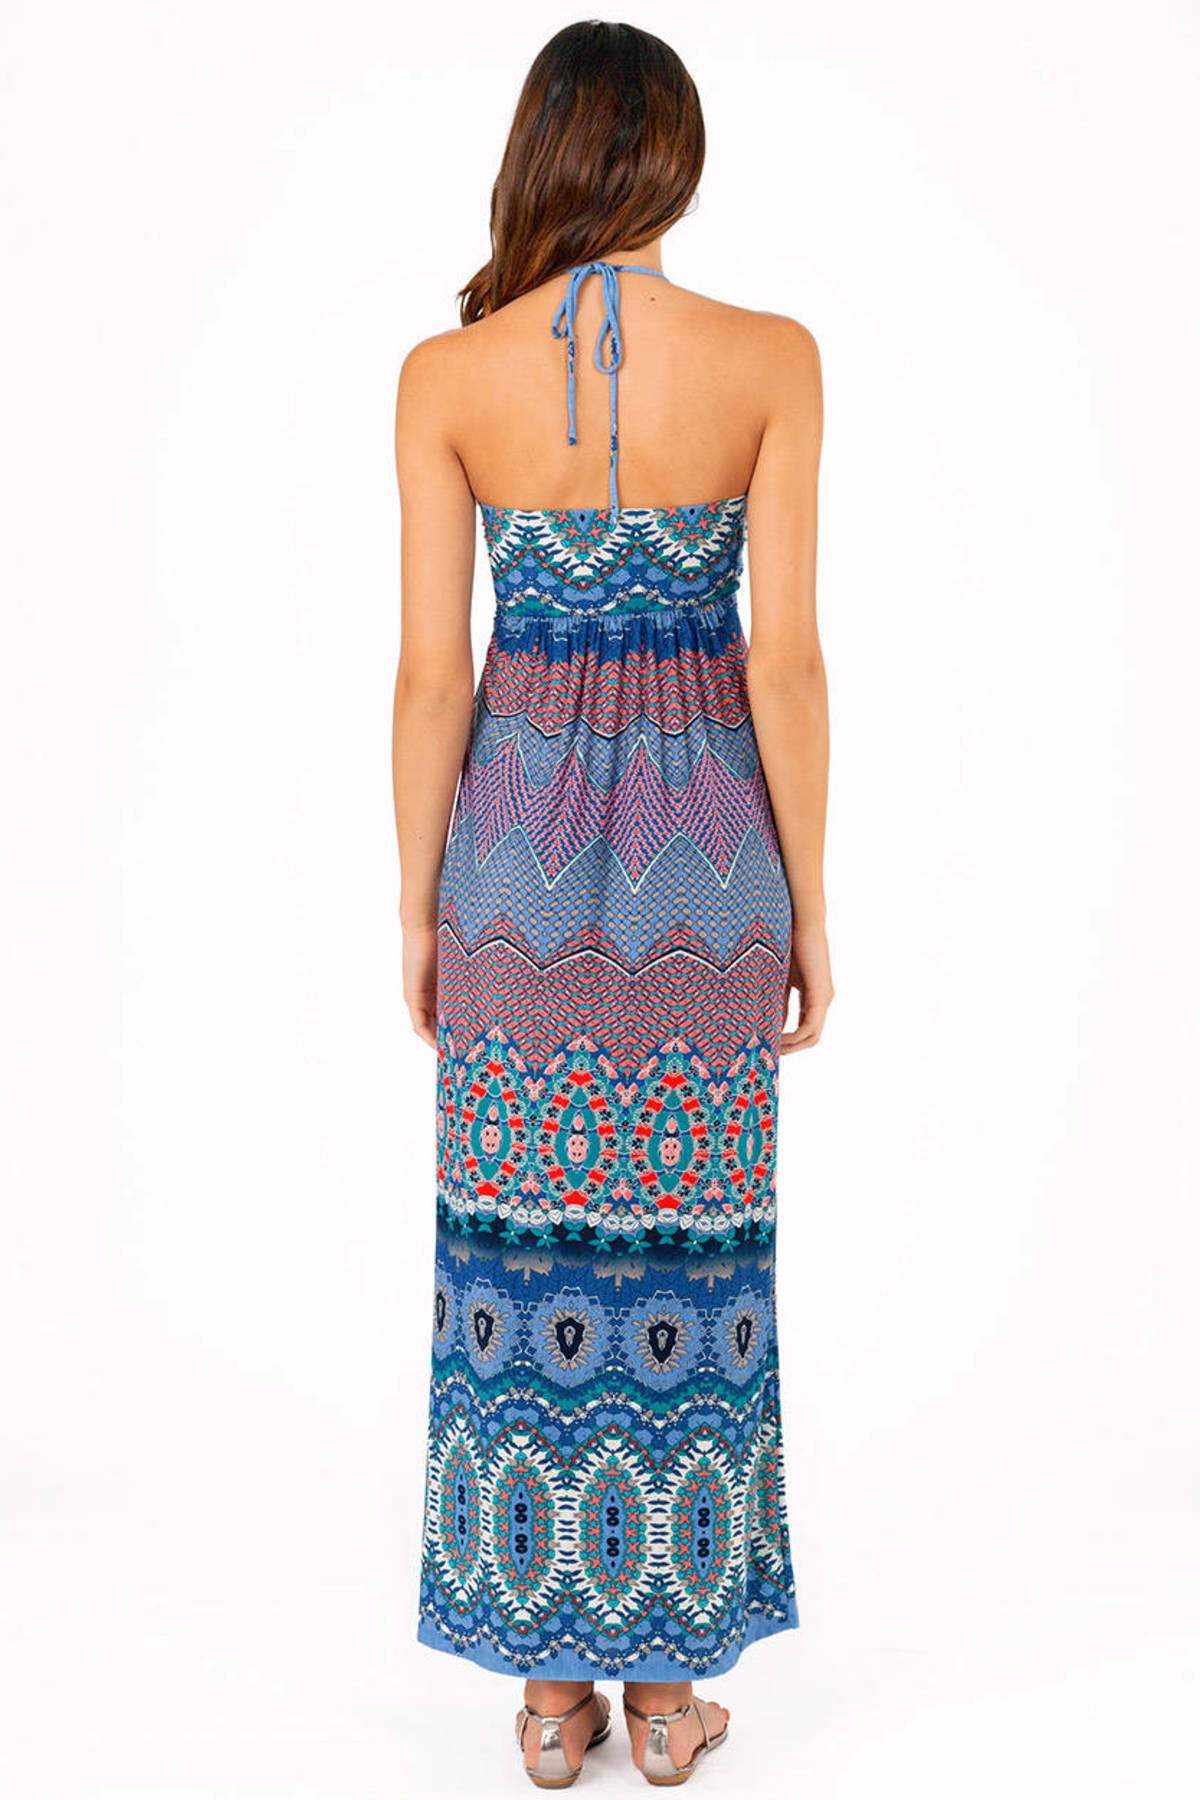 Pitter Pattern Maxi Dress in Blue - $19 | Tobi US